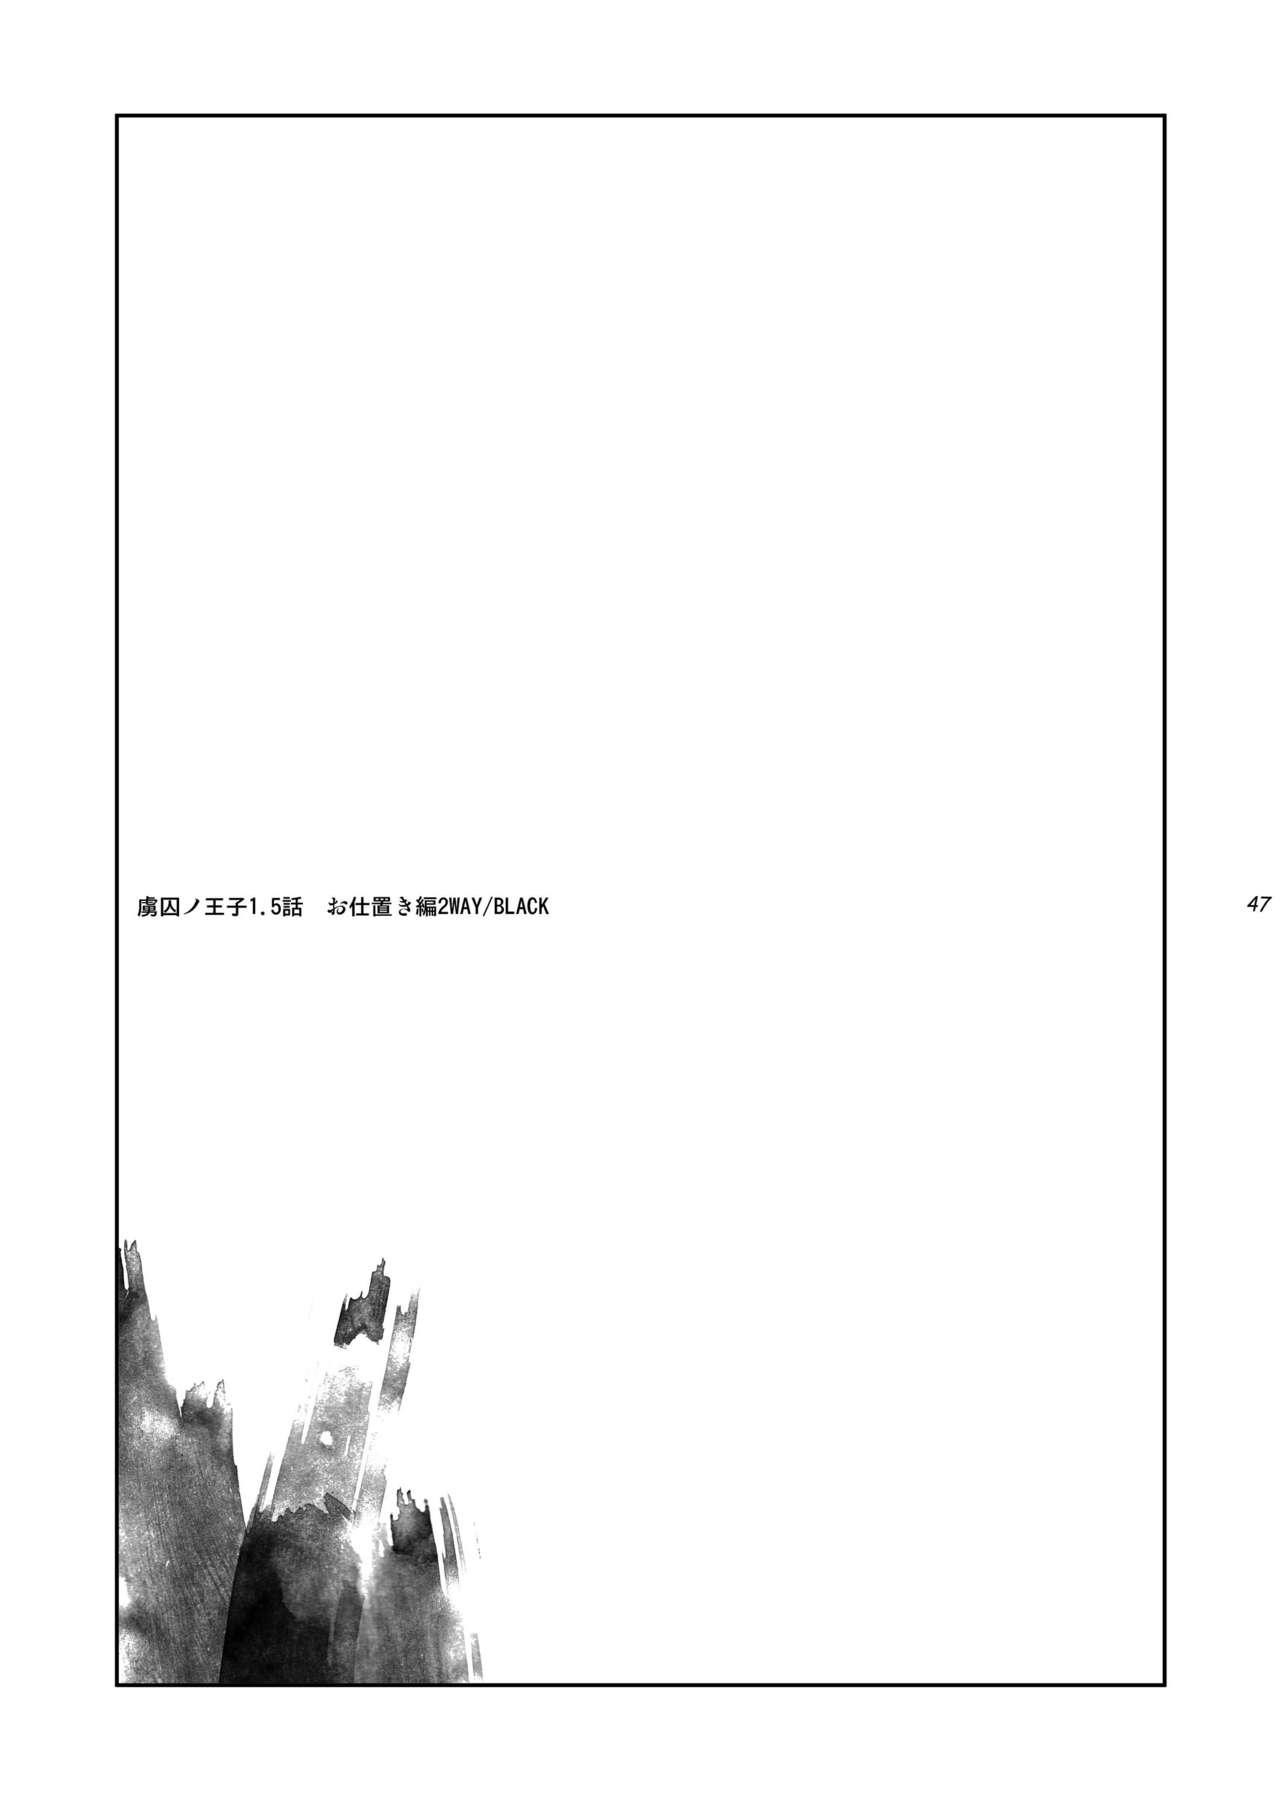 [+10 (Rakuda Torino)] Ryoshuu no Ouji 1.5-Wa Oshioki-hen 2 WAY/BLACK [Digital] 46